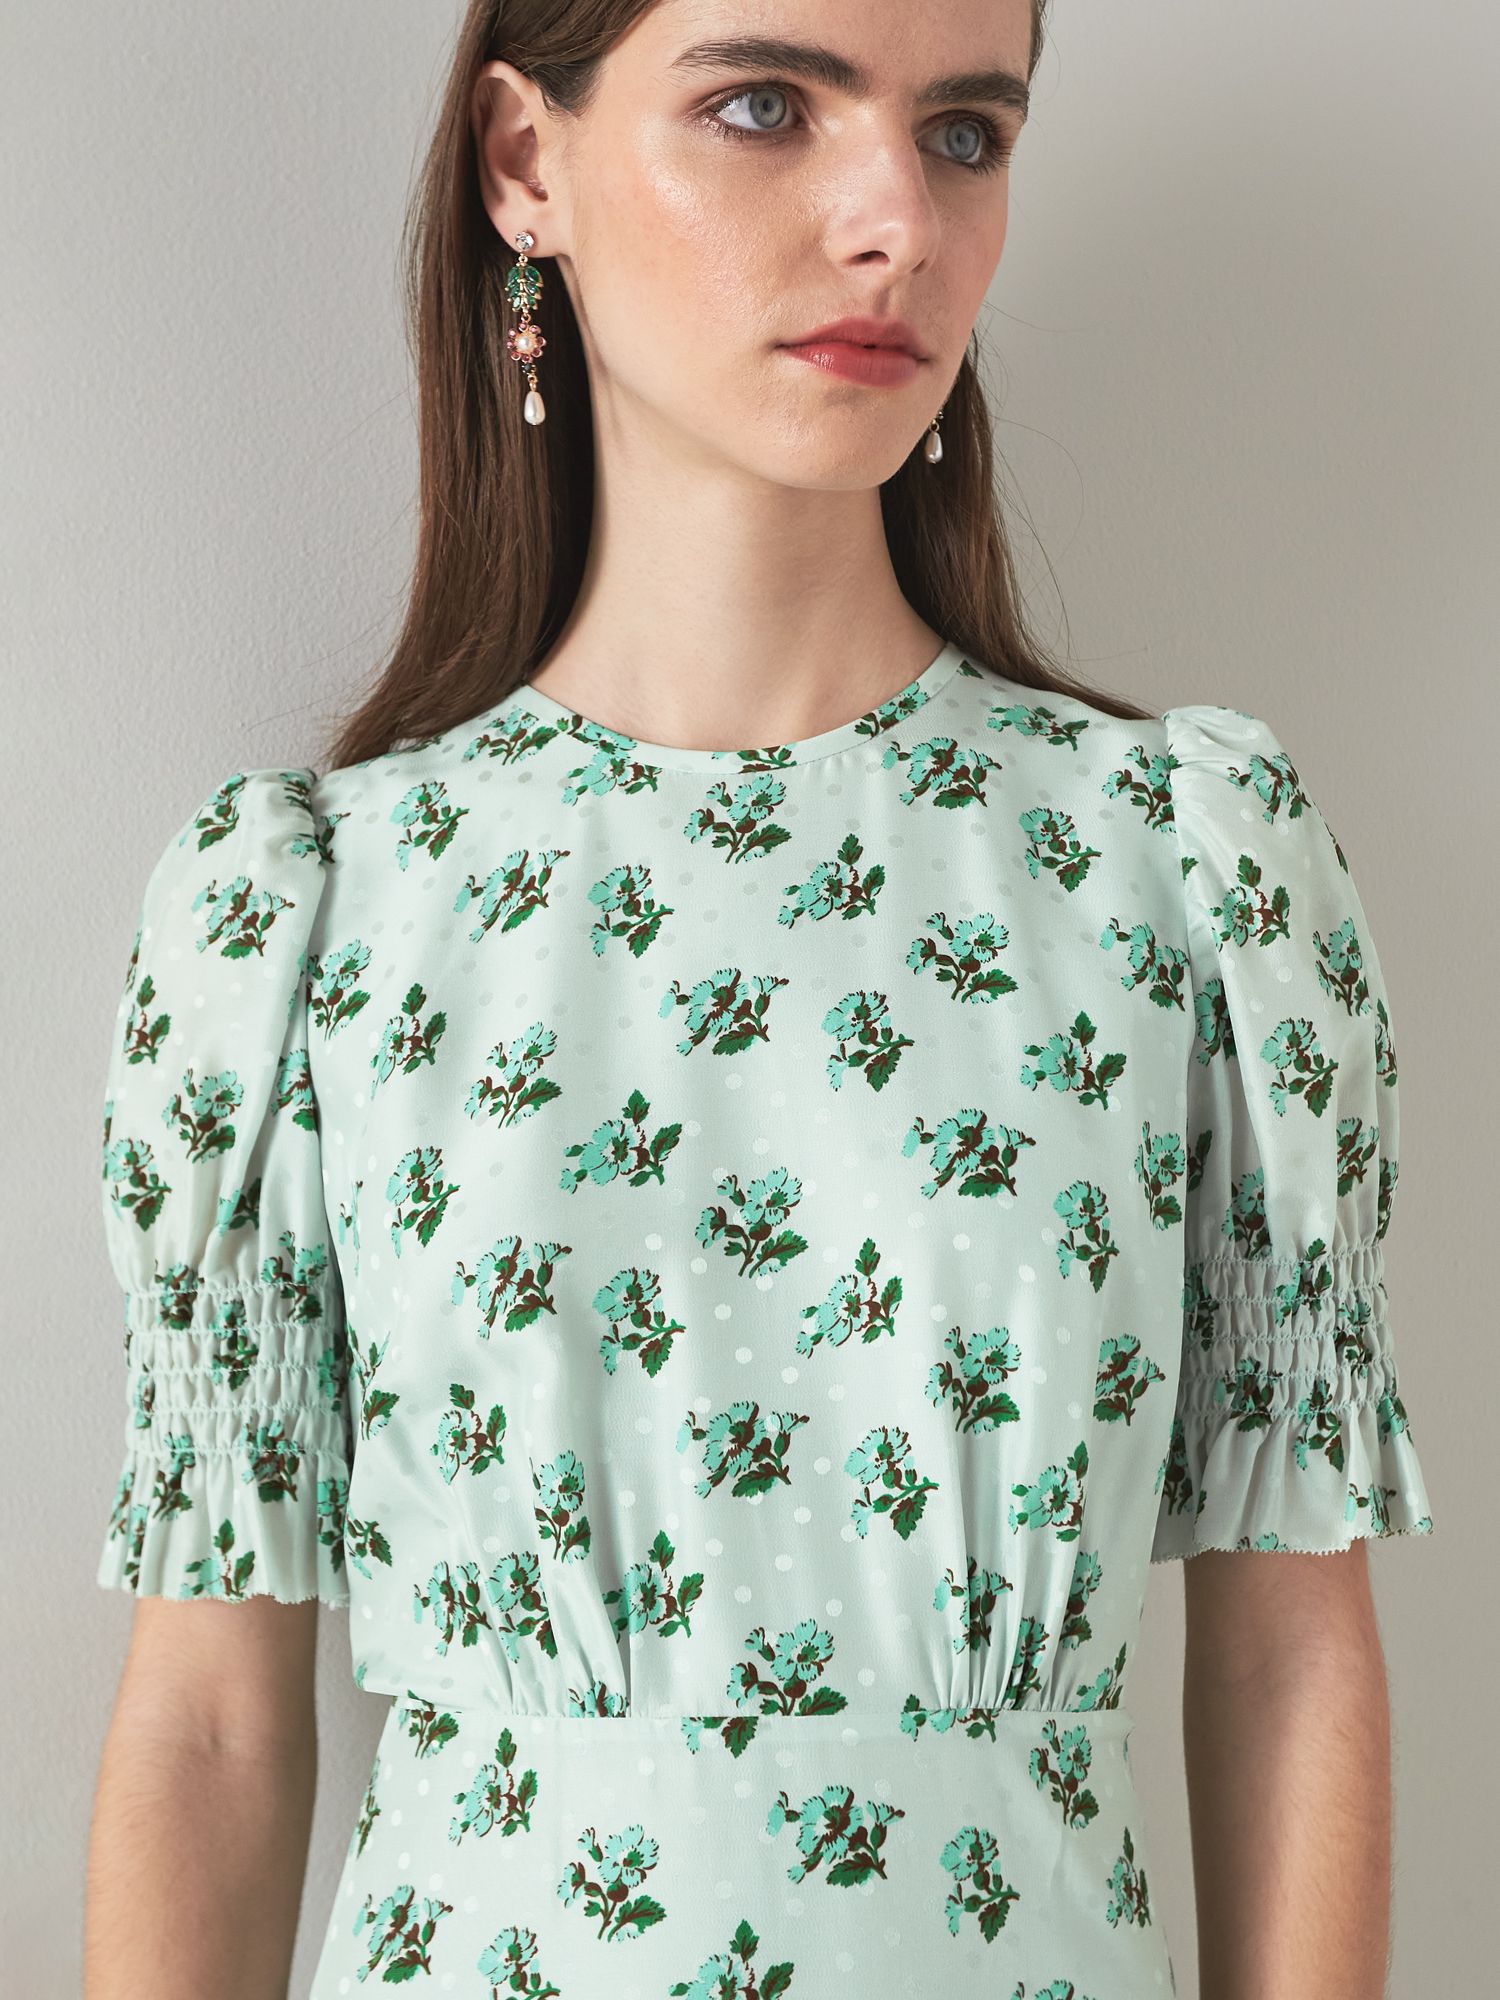 L.K.Bennett Tabitha Midi Dress, Green